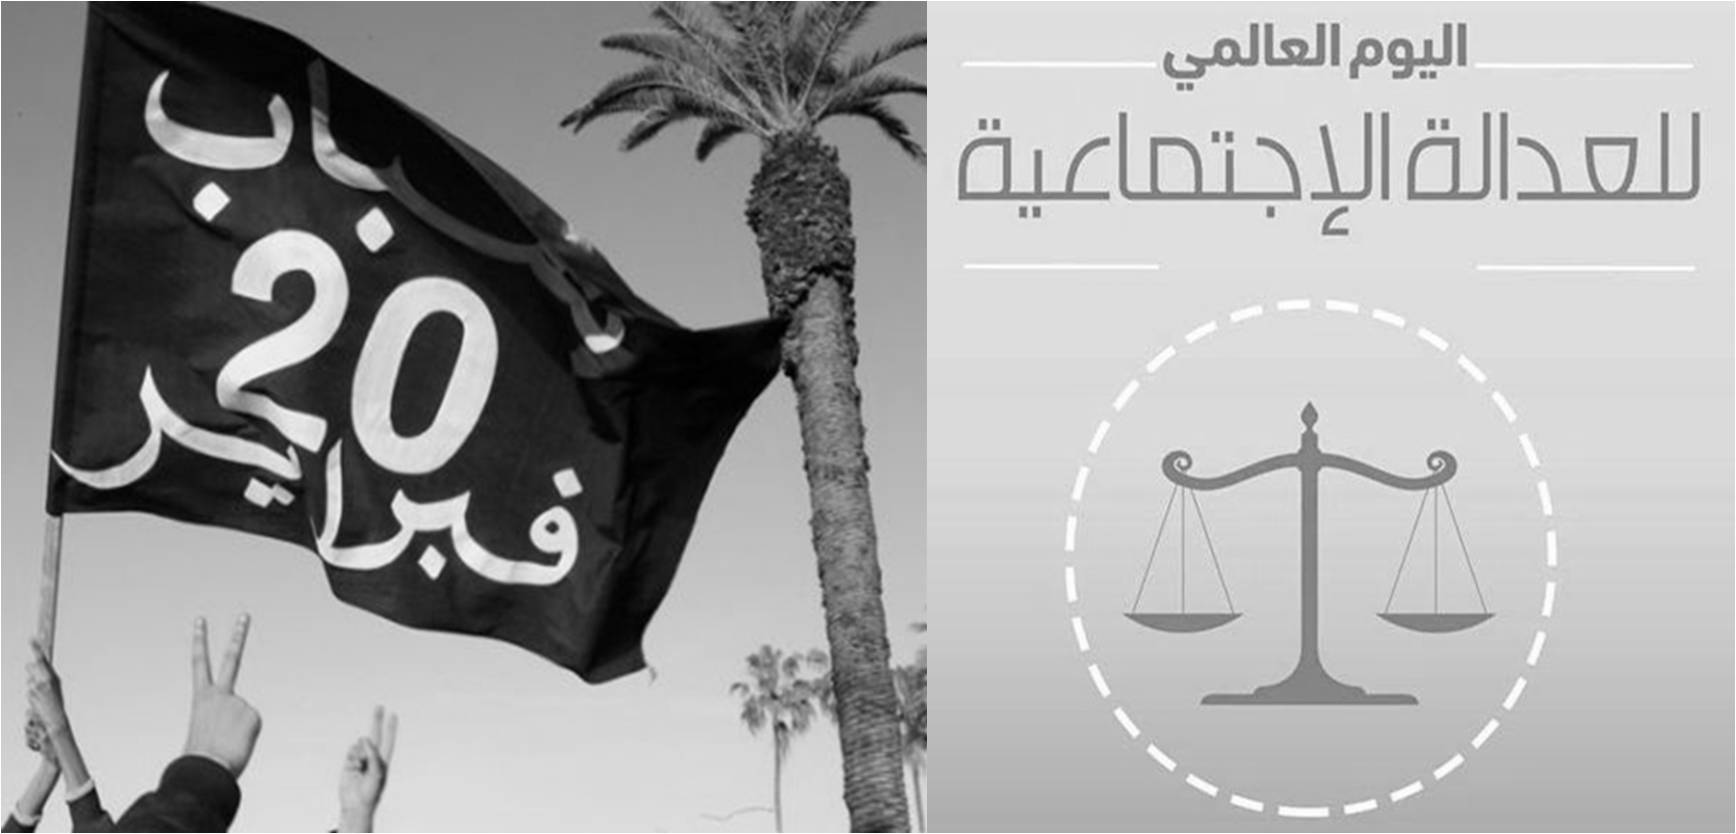 بيان الجمعية المغربية لحقوق الانسان بمناسبة  اليوم العالمي للعدالة الاجتماعية وذكرى حركة 20 فبراير